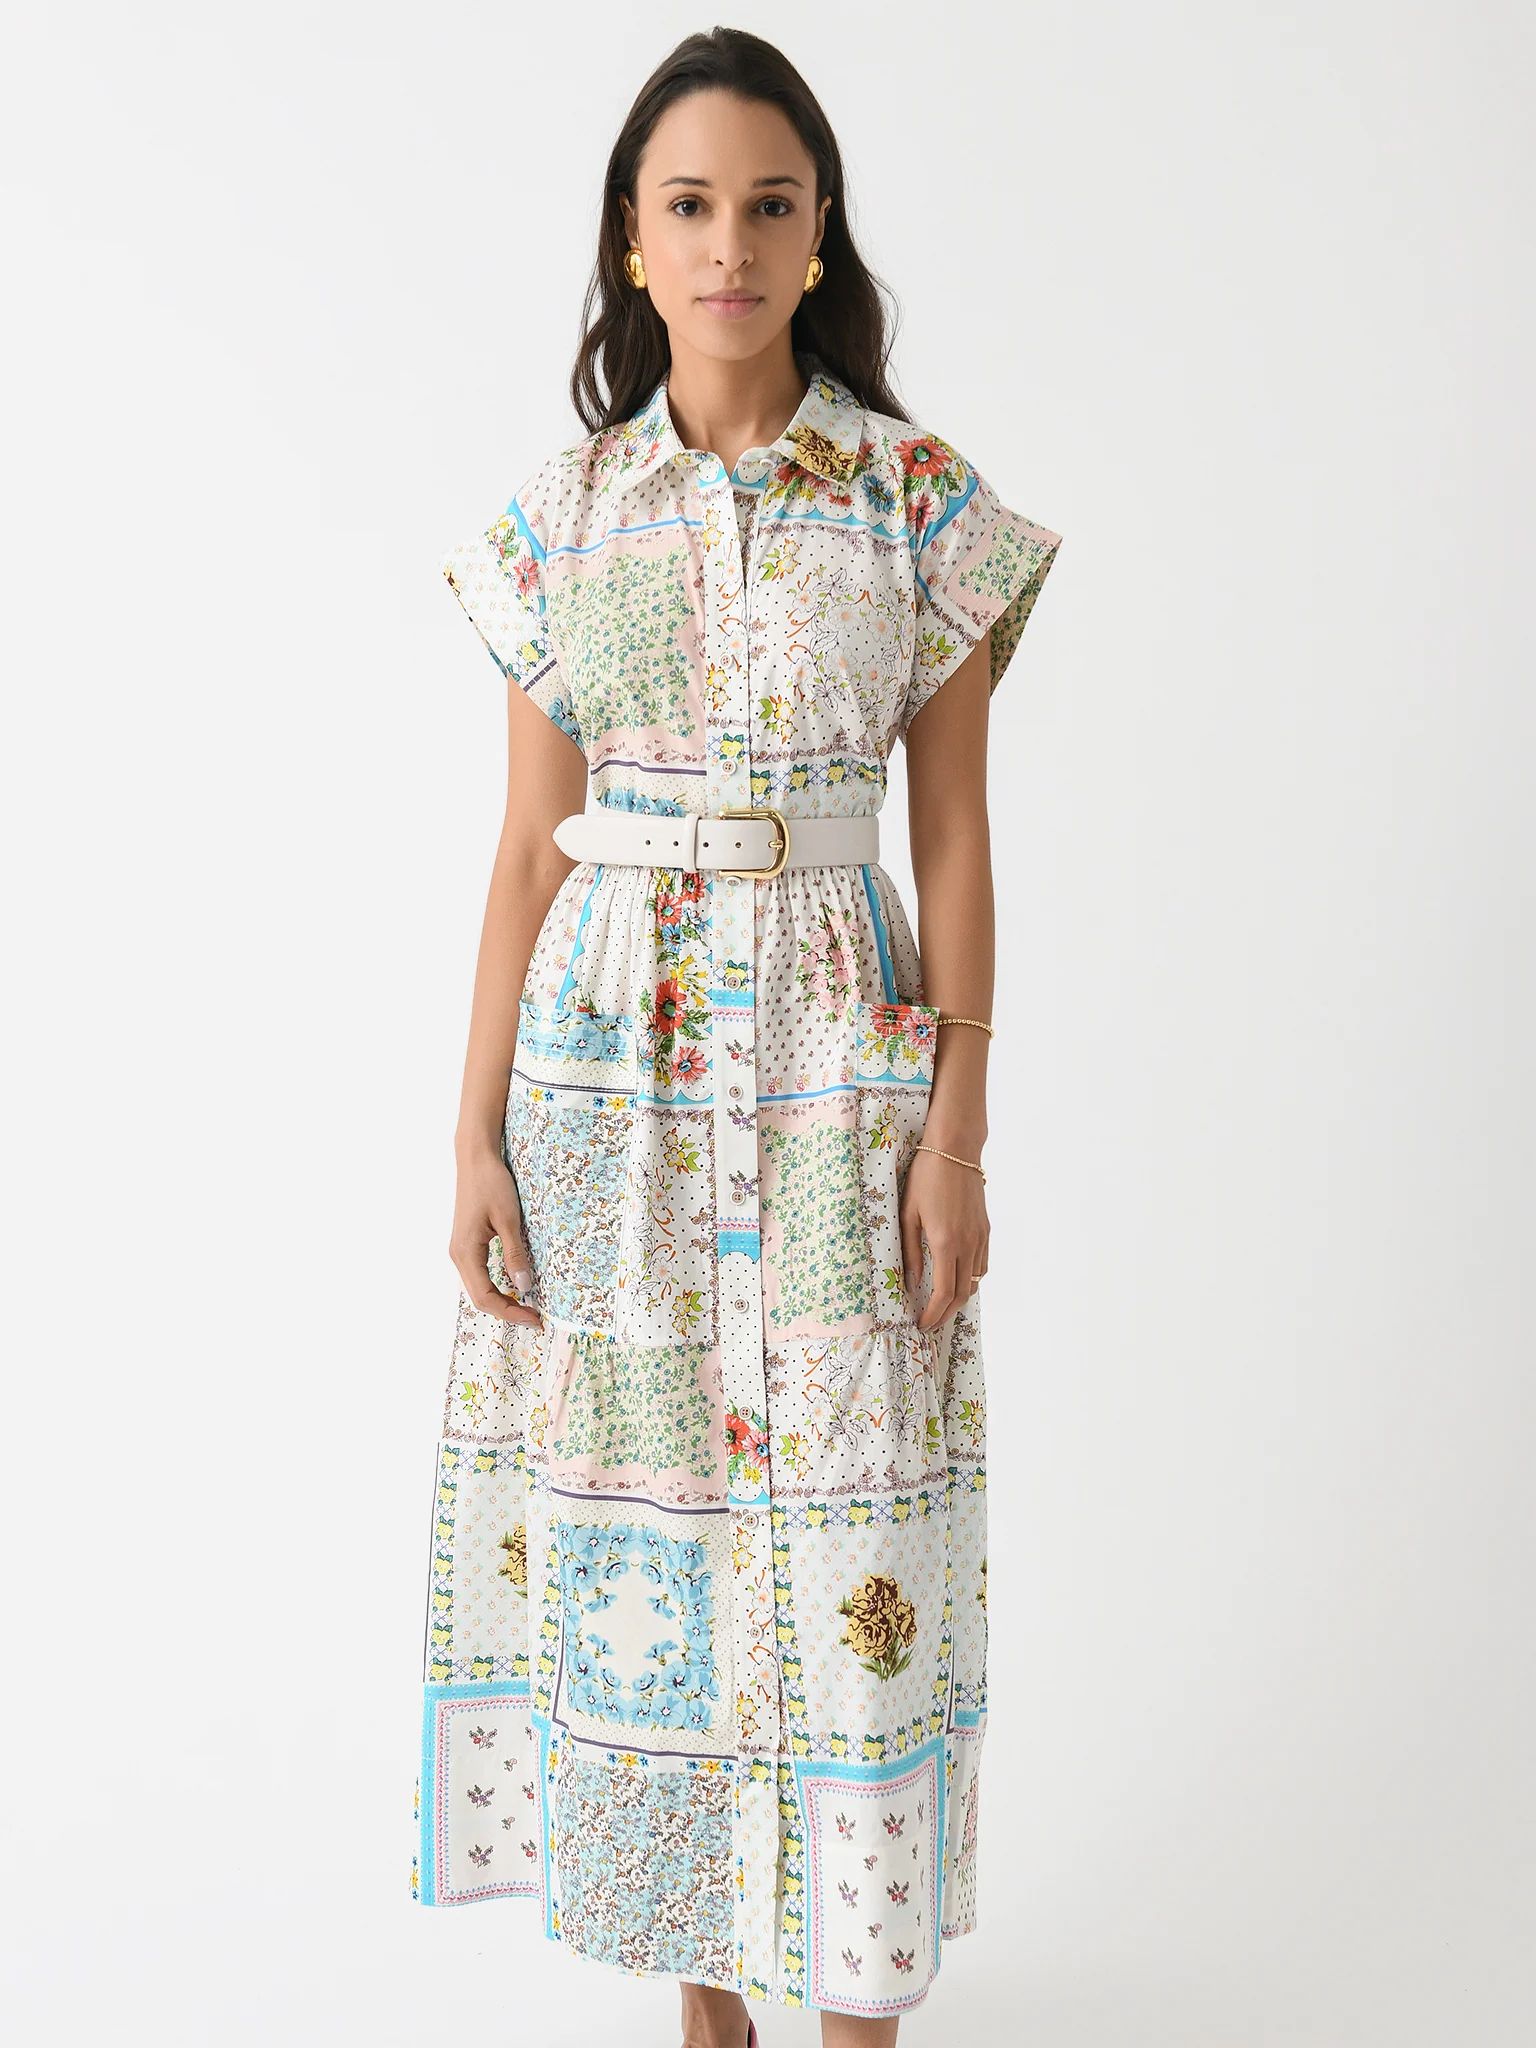 HUNTER BELL
                      
                     Women's Sarah Dress | Saint Bernard